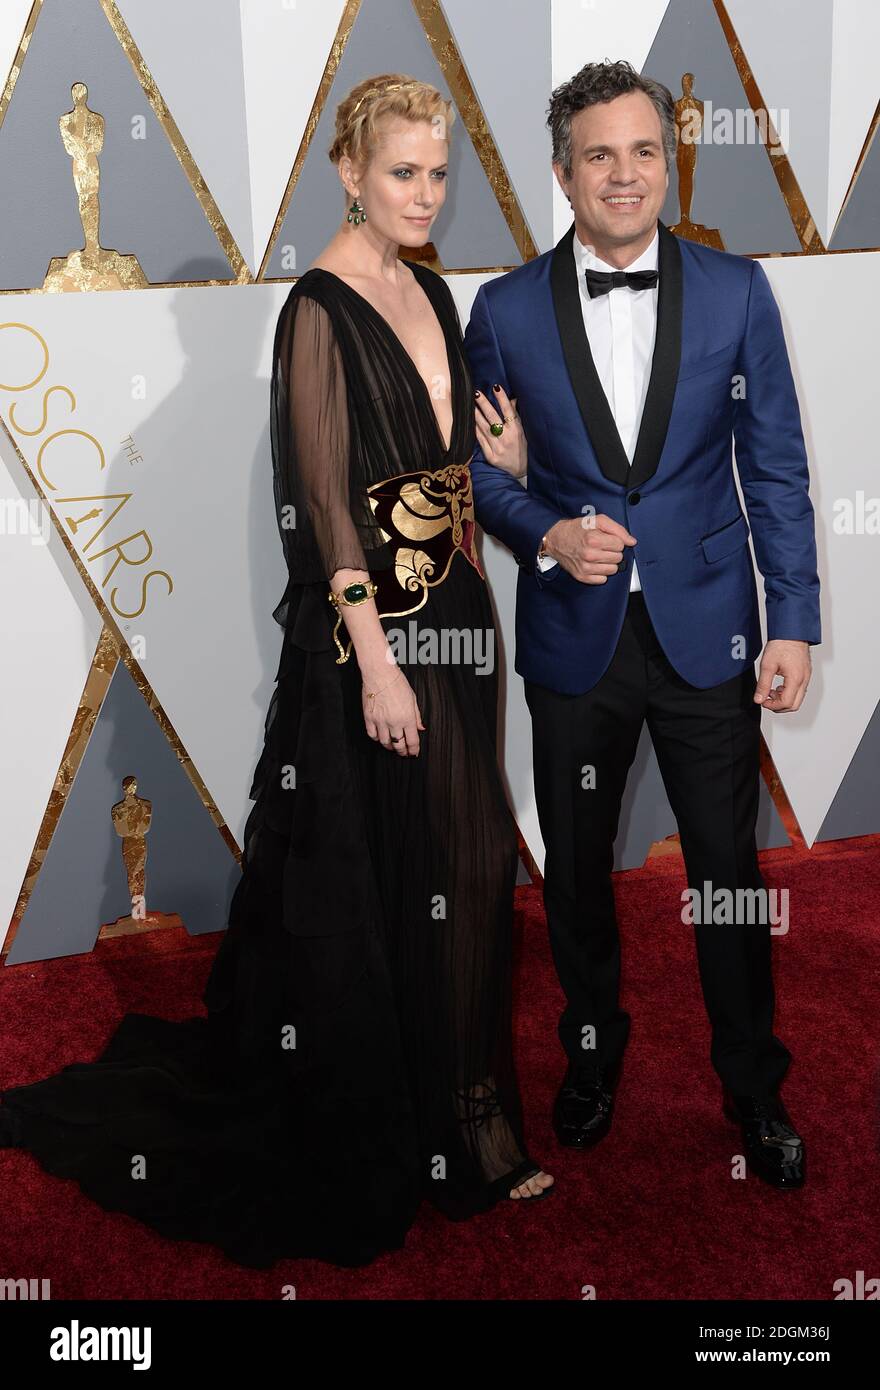 Sunrise Coigney et Mark Ruffalo arrivent aux 88e Academy Awards qui se tiennent au Dolby Theatre à Hollywood, Los Angeles, CA, États-Unis, le 28 février 2016. Banque D'Images